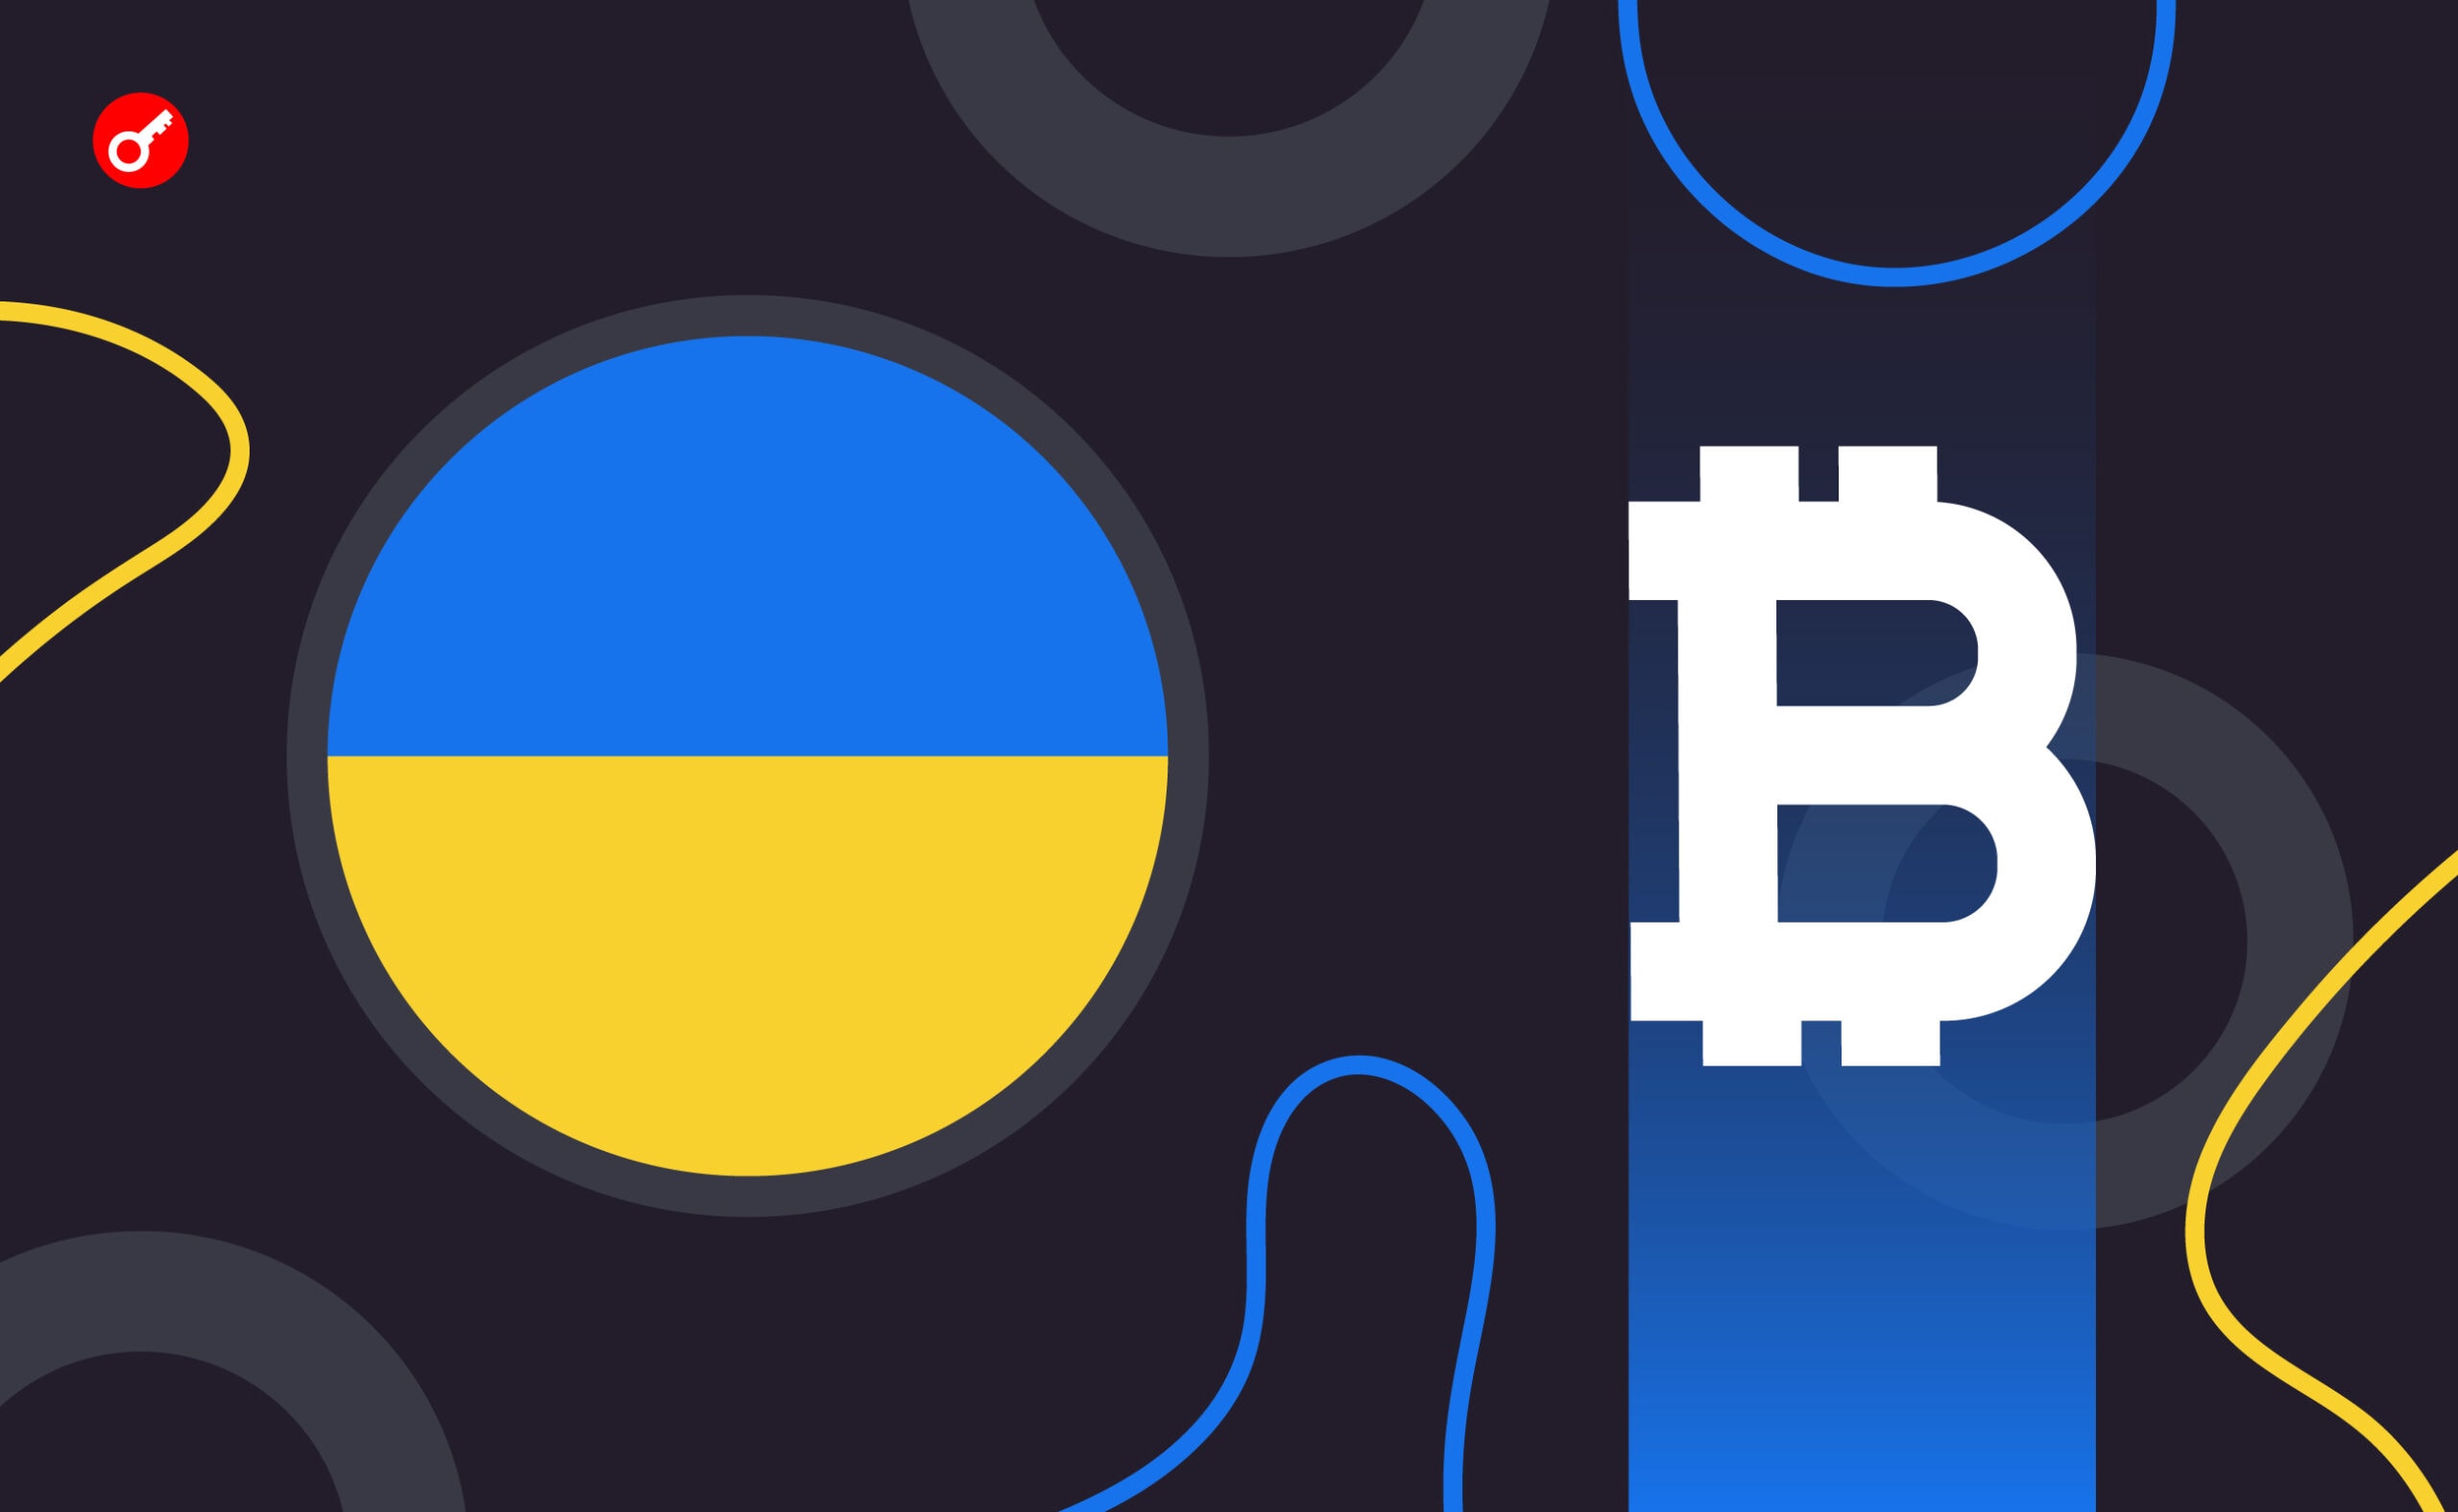 НКЦБФР Украины подвела итоги публичного обсуждения законопроекта о криптовалюте. Заглавный коллаж новости.